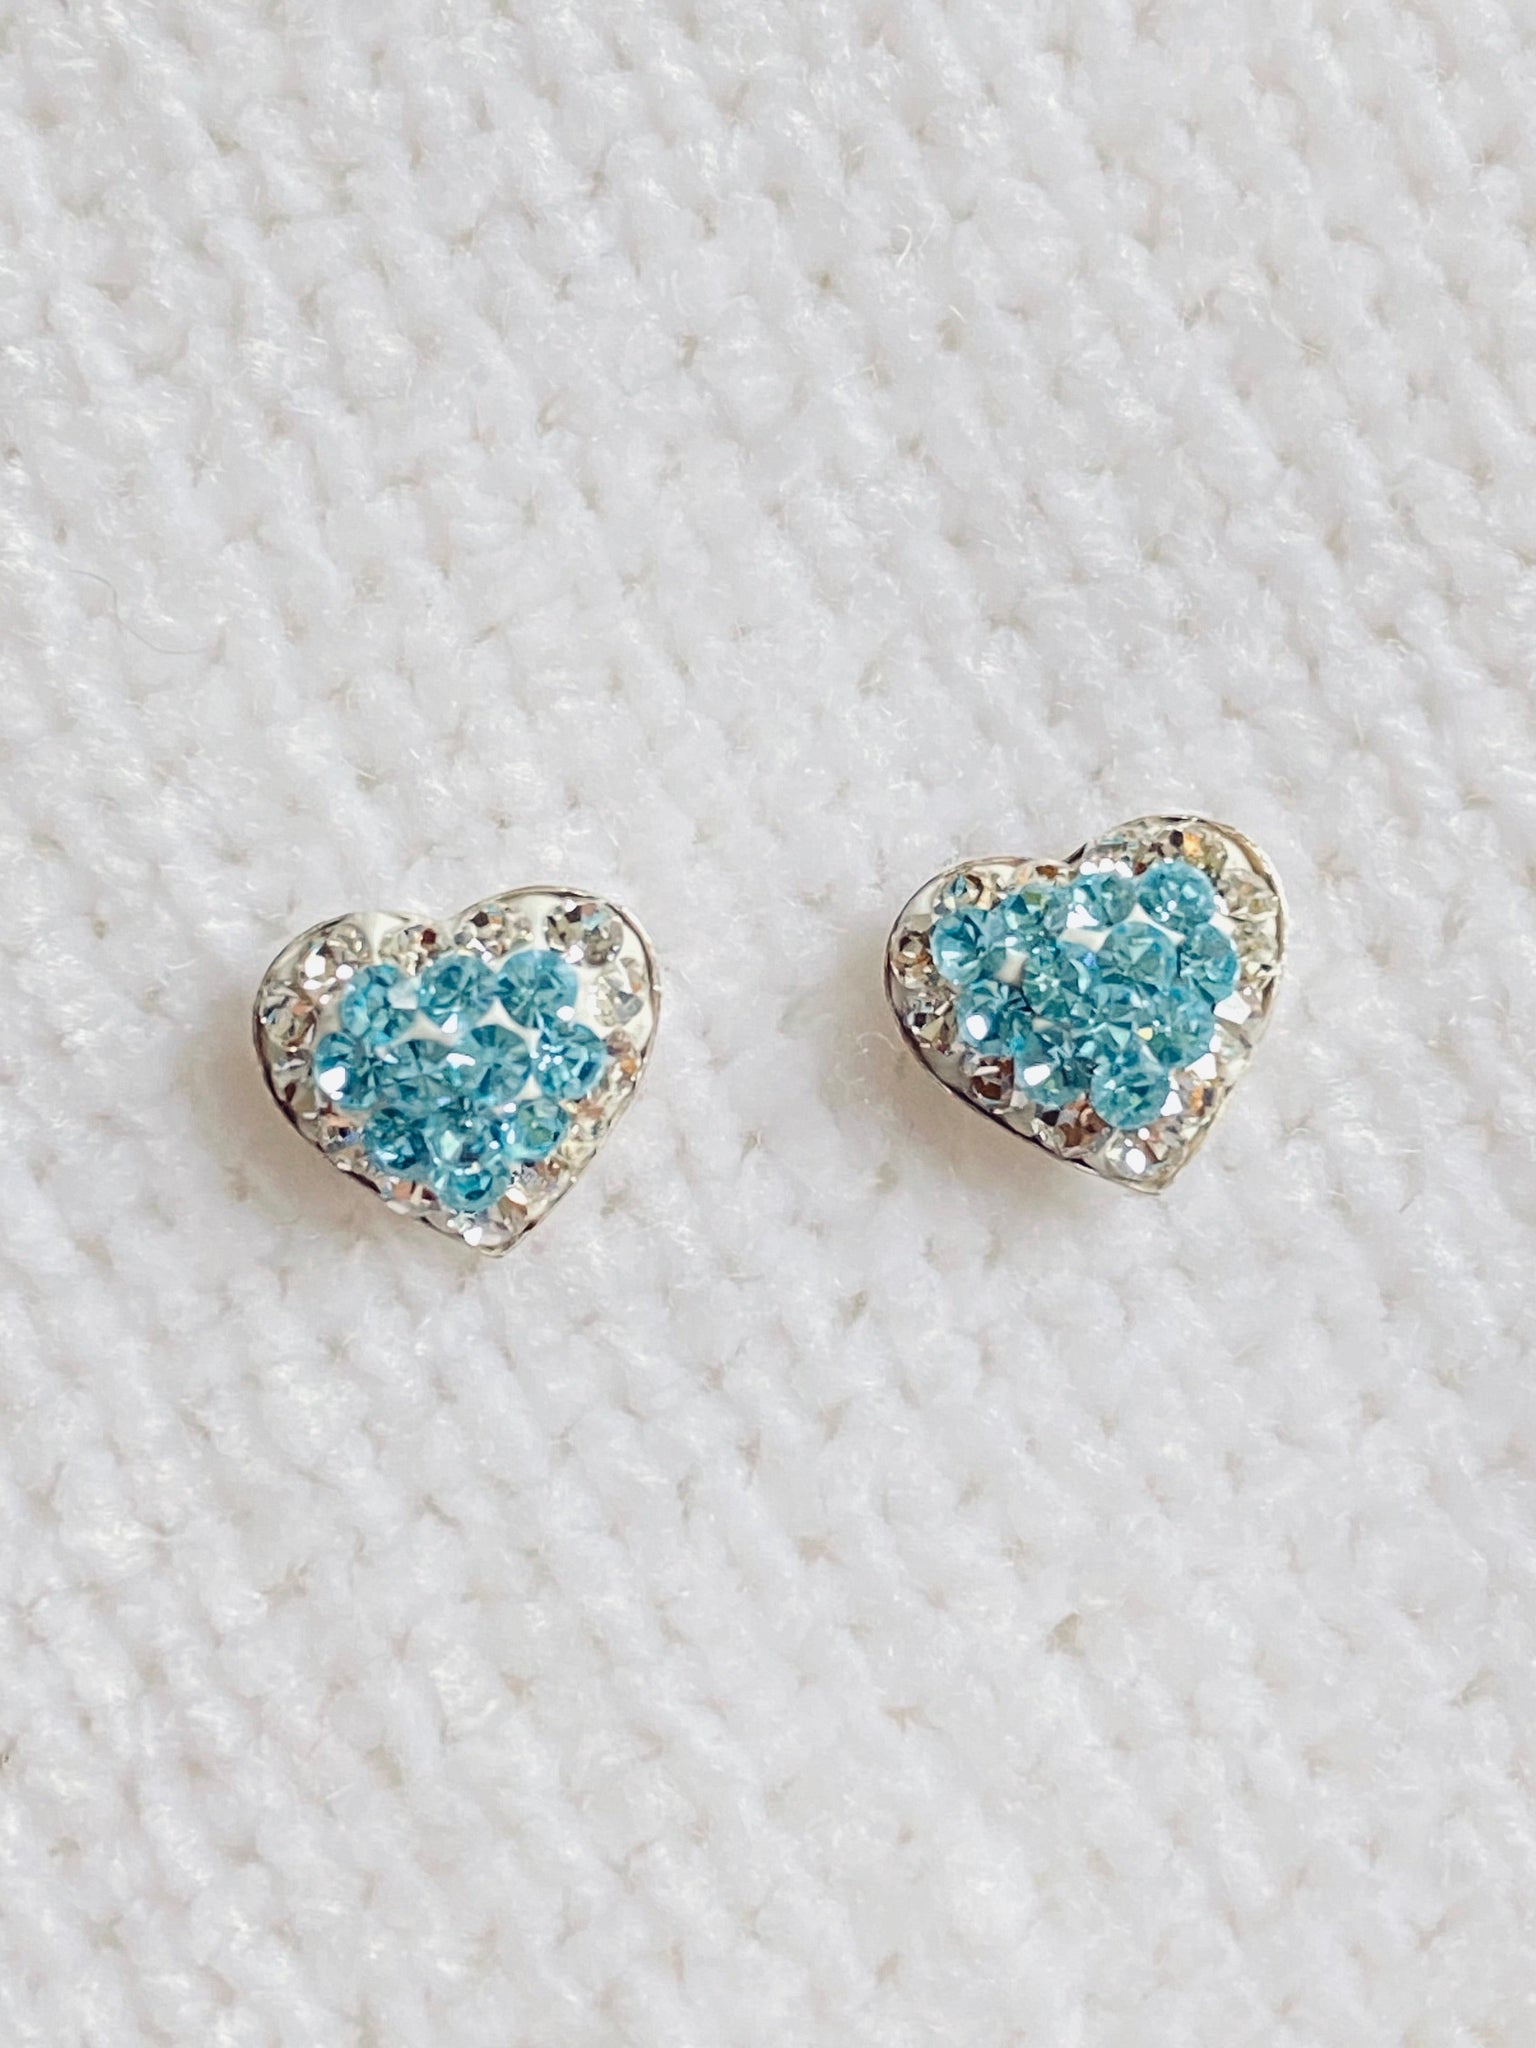 Beautiful CZ Color Heart 925 Stud Sterling Silver Earrings